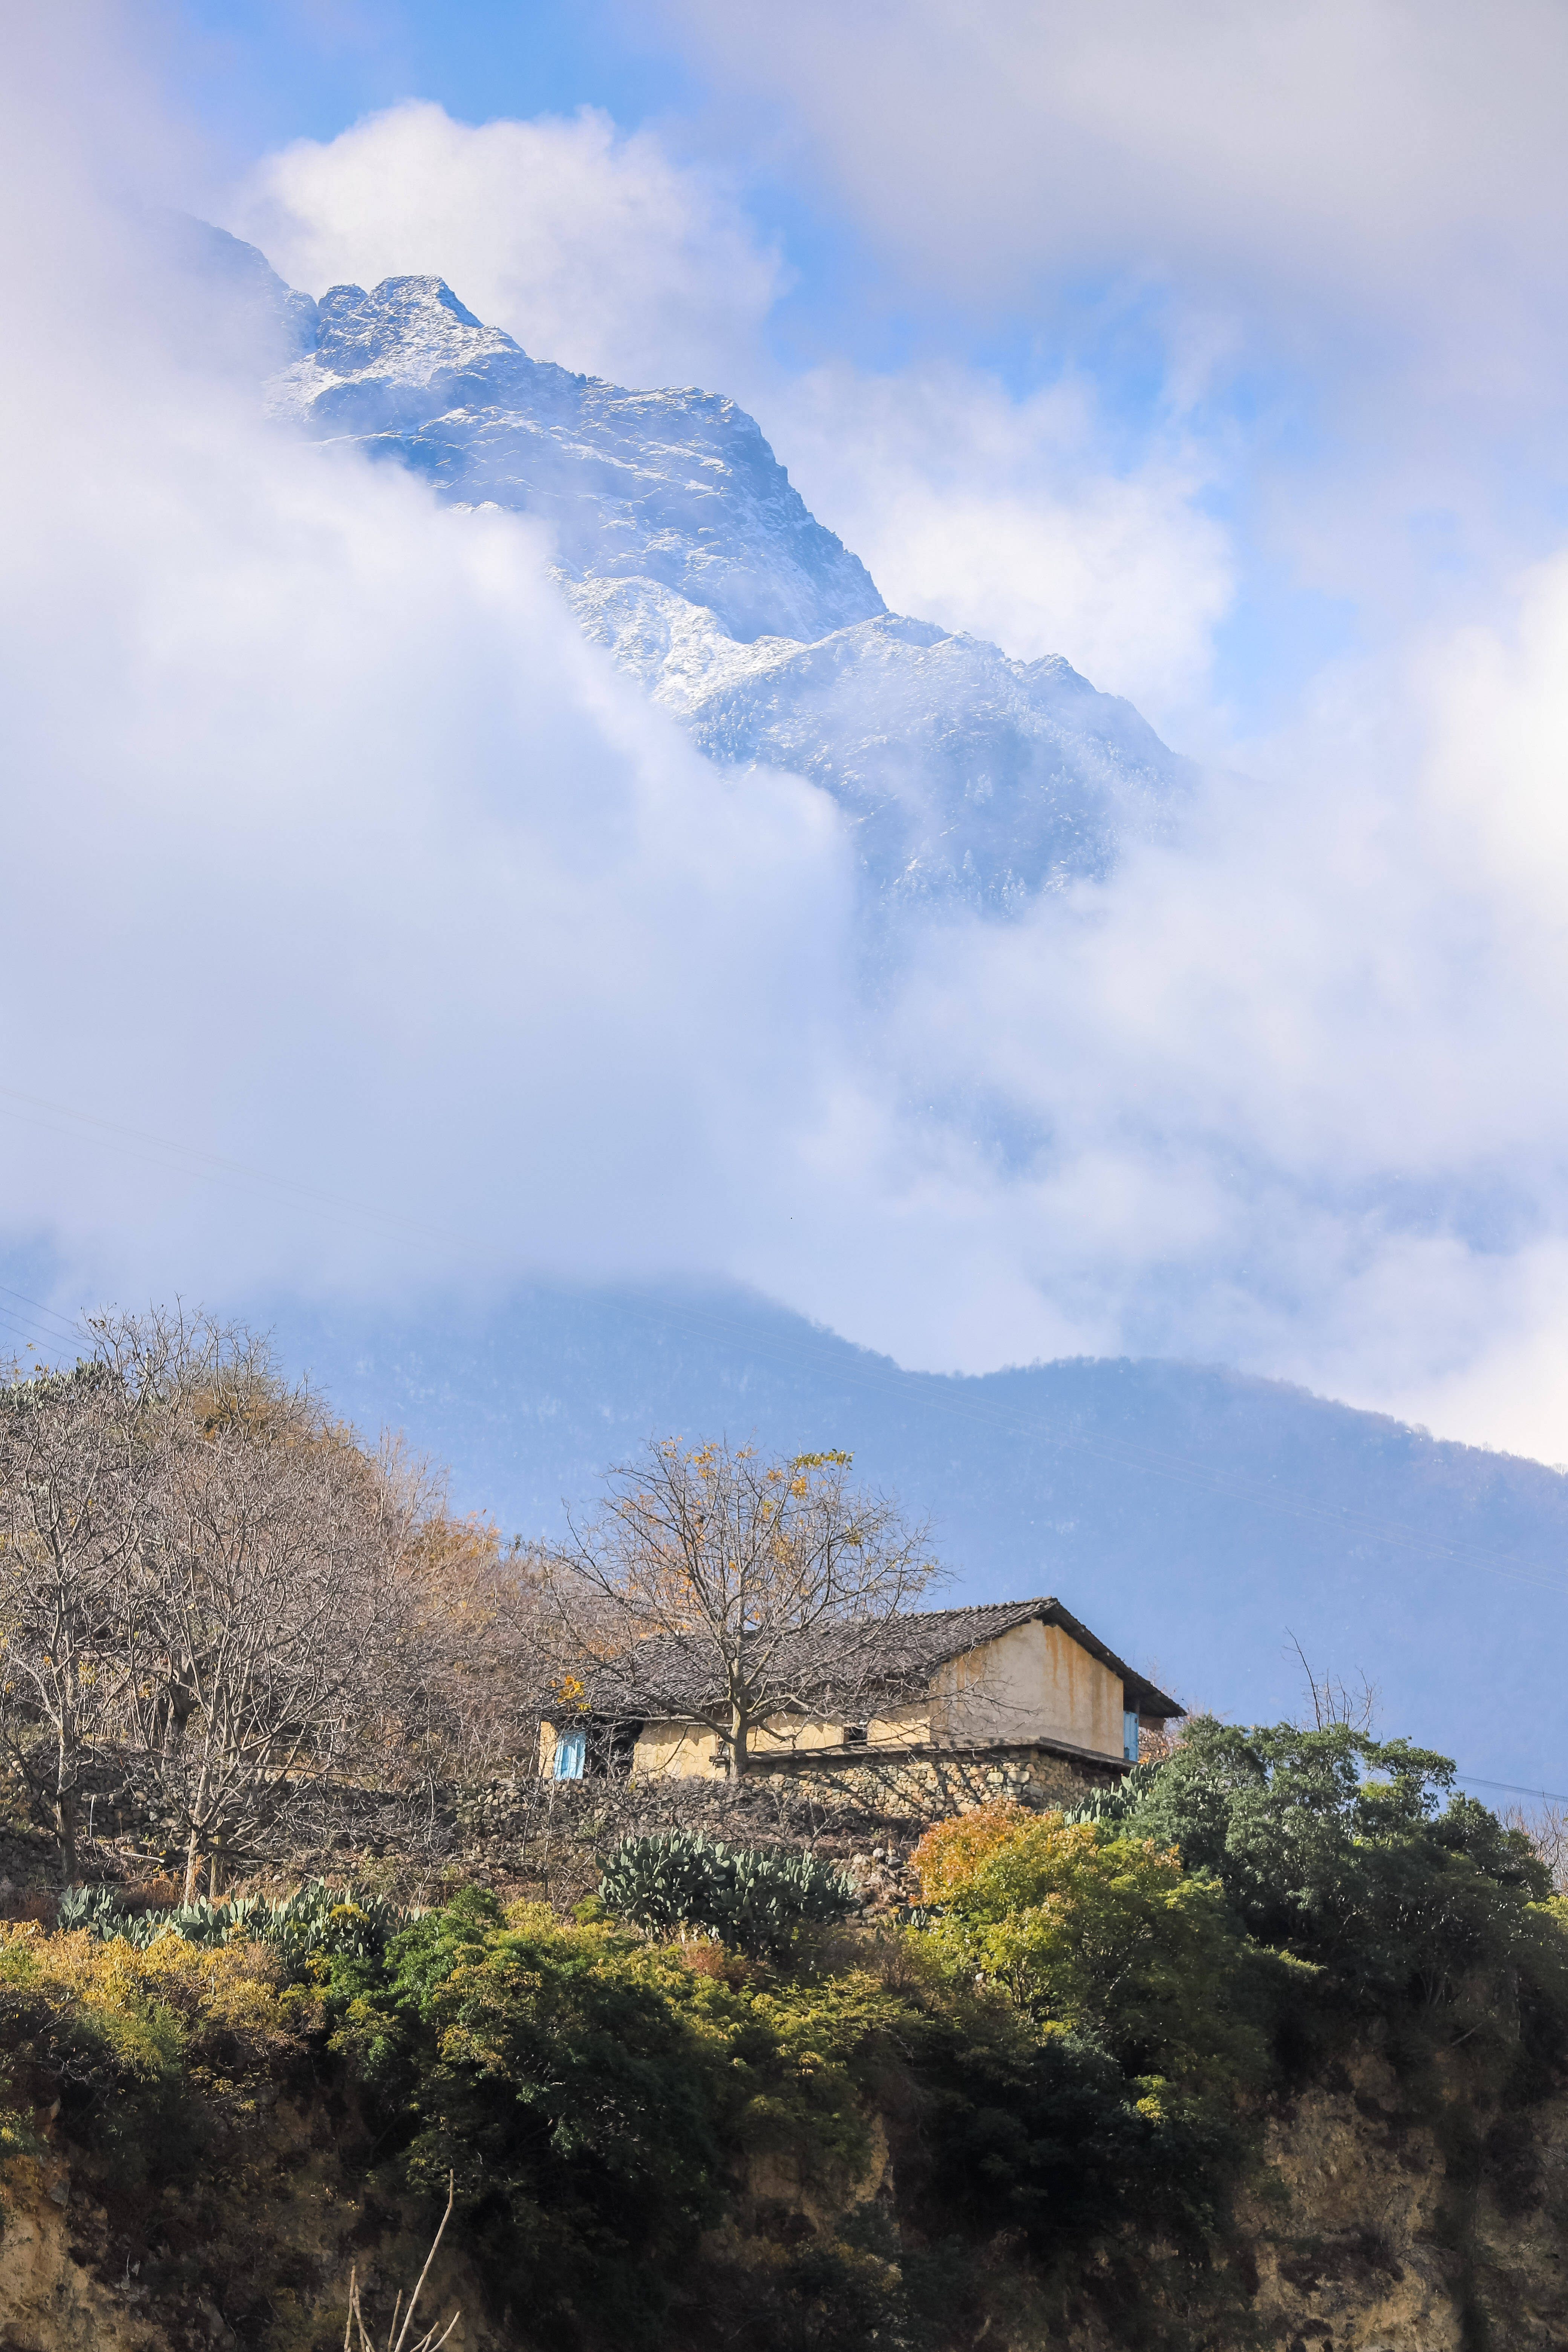 自驾318川藏线,甘孜州泸定这座雪山,风景太美了